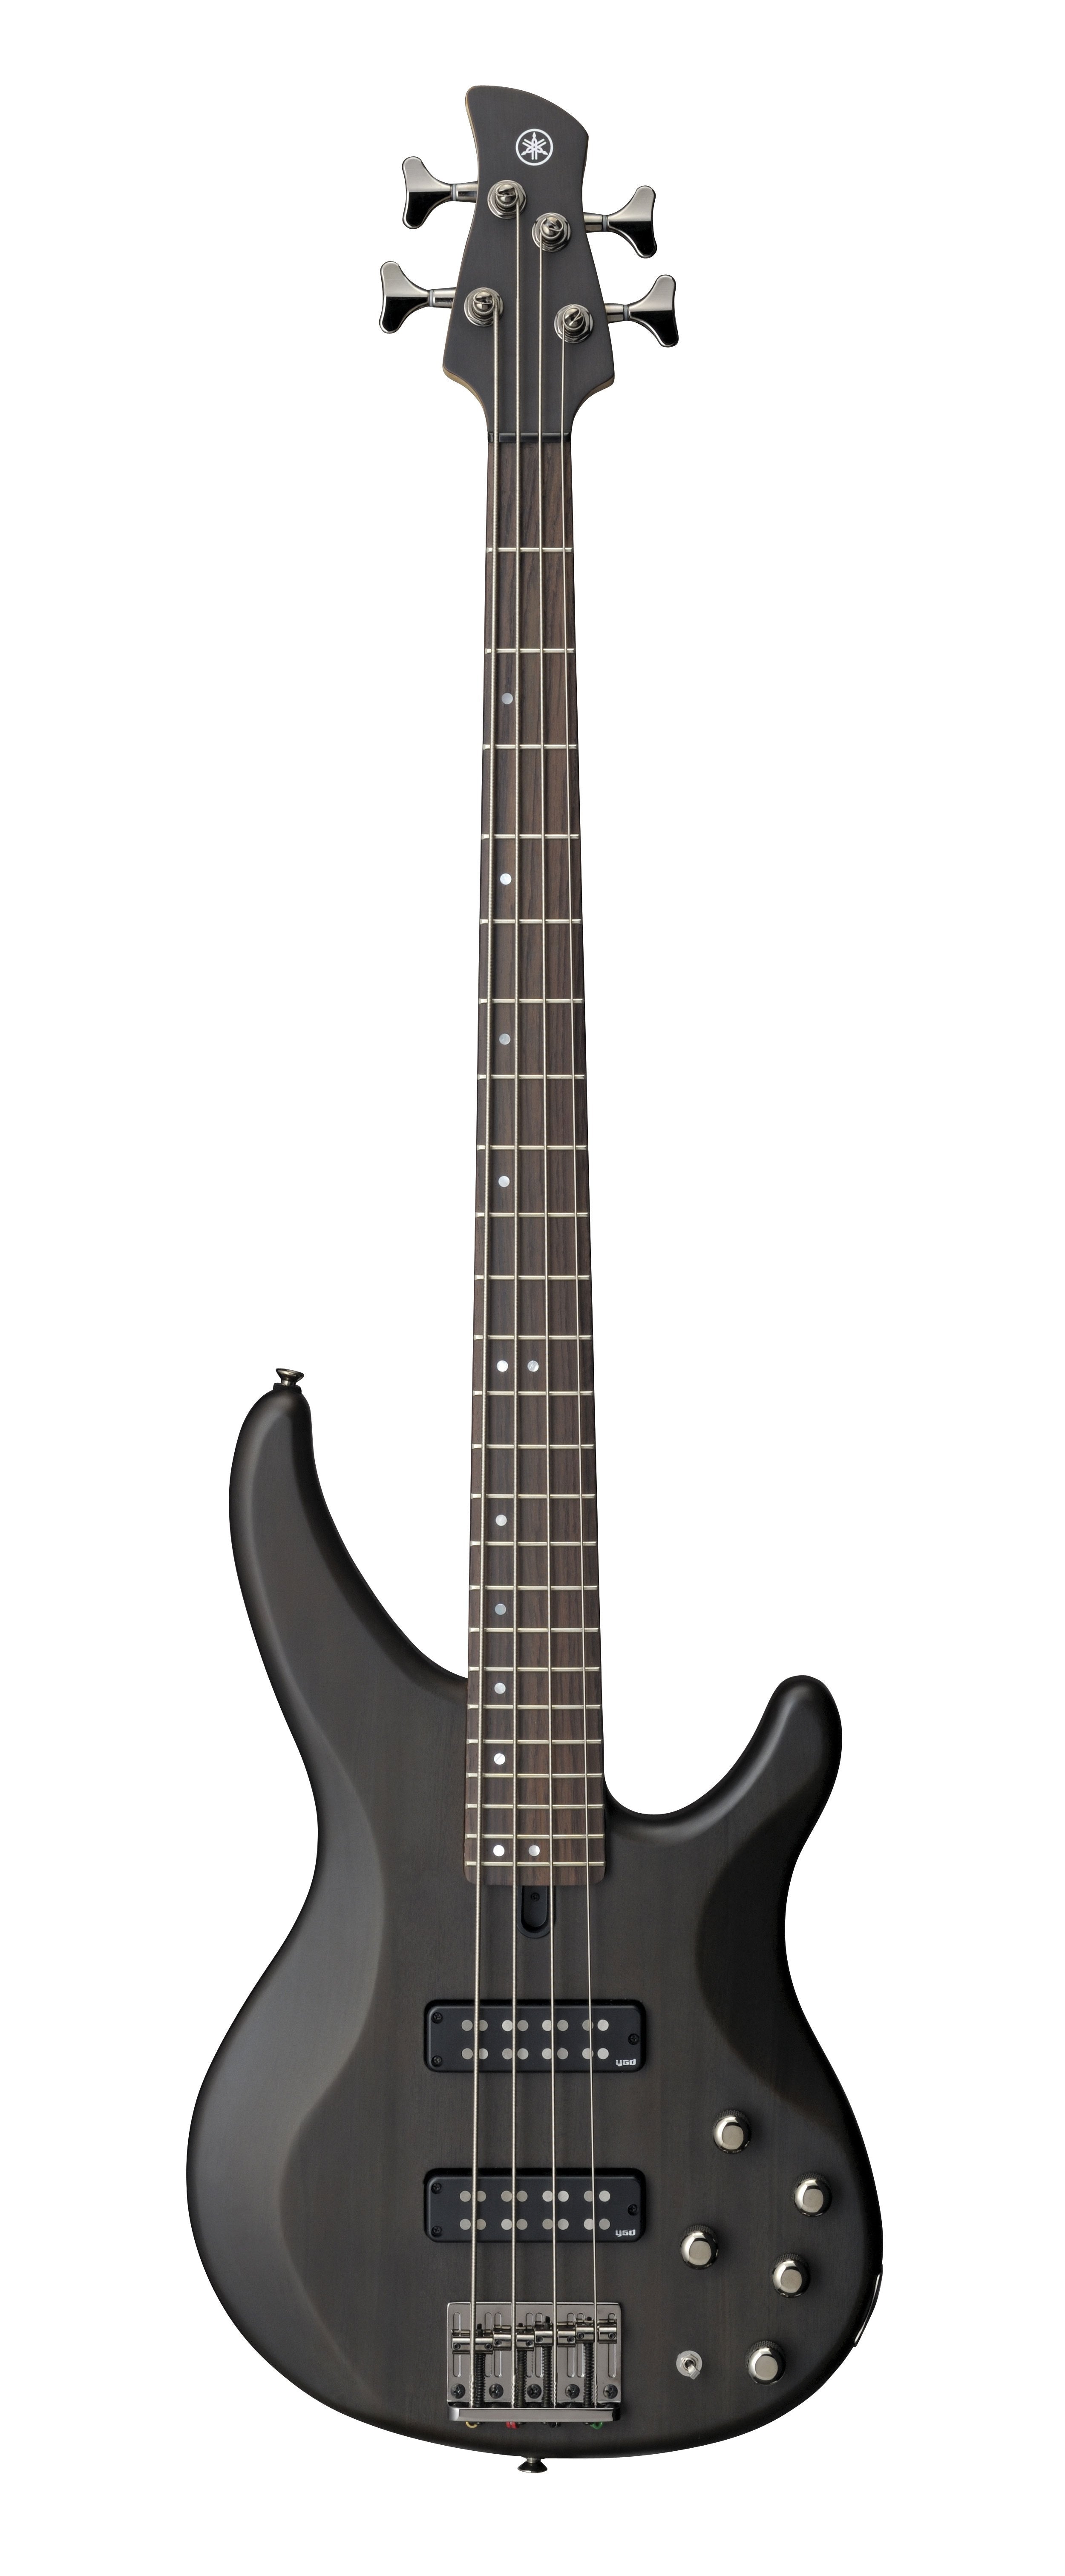 YAMAHA TRBX504 Electric Bass Guitar (Translucent Black)